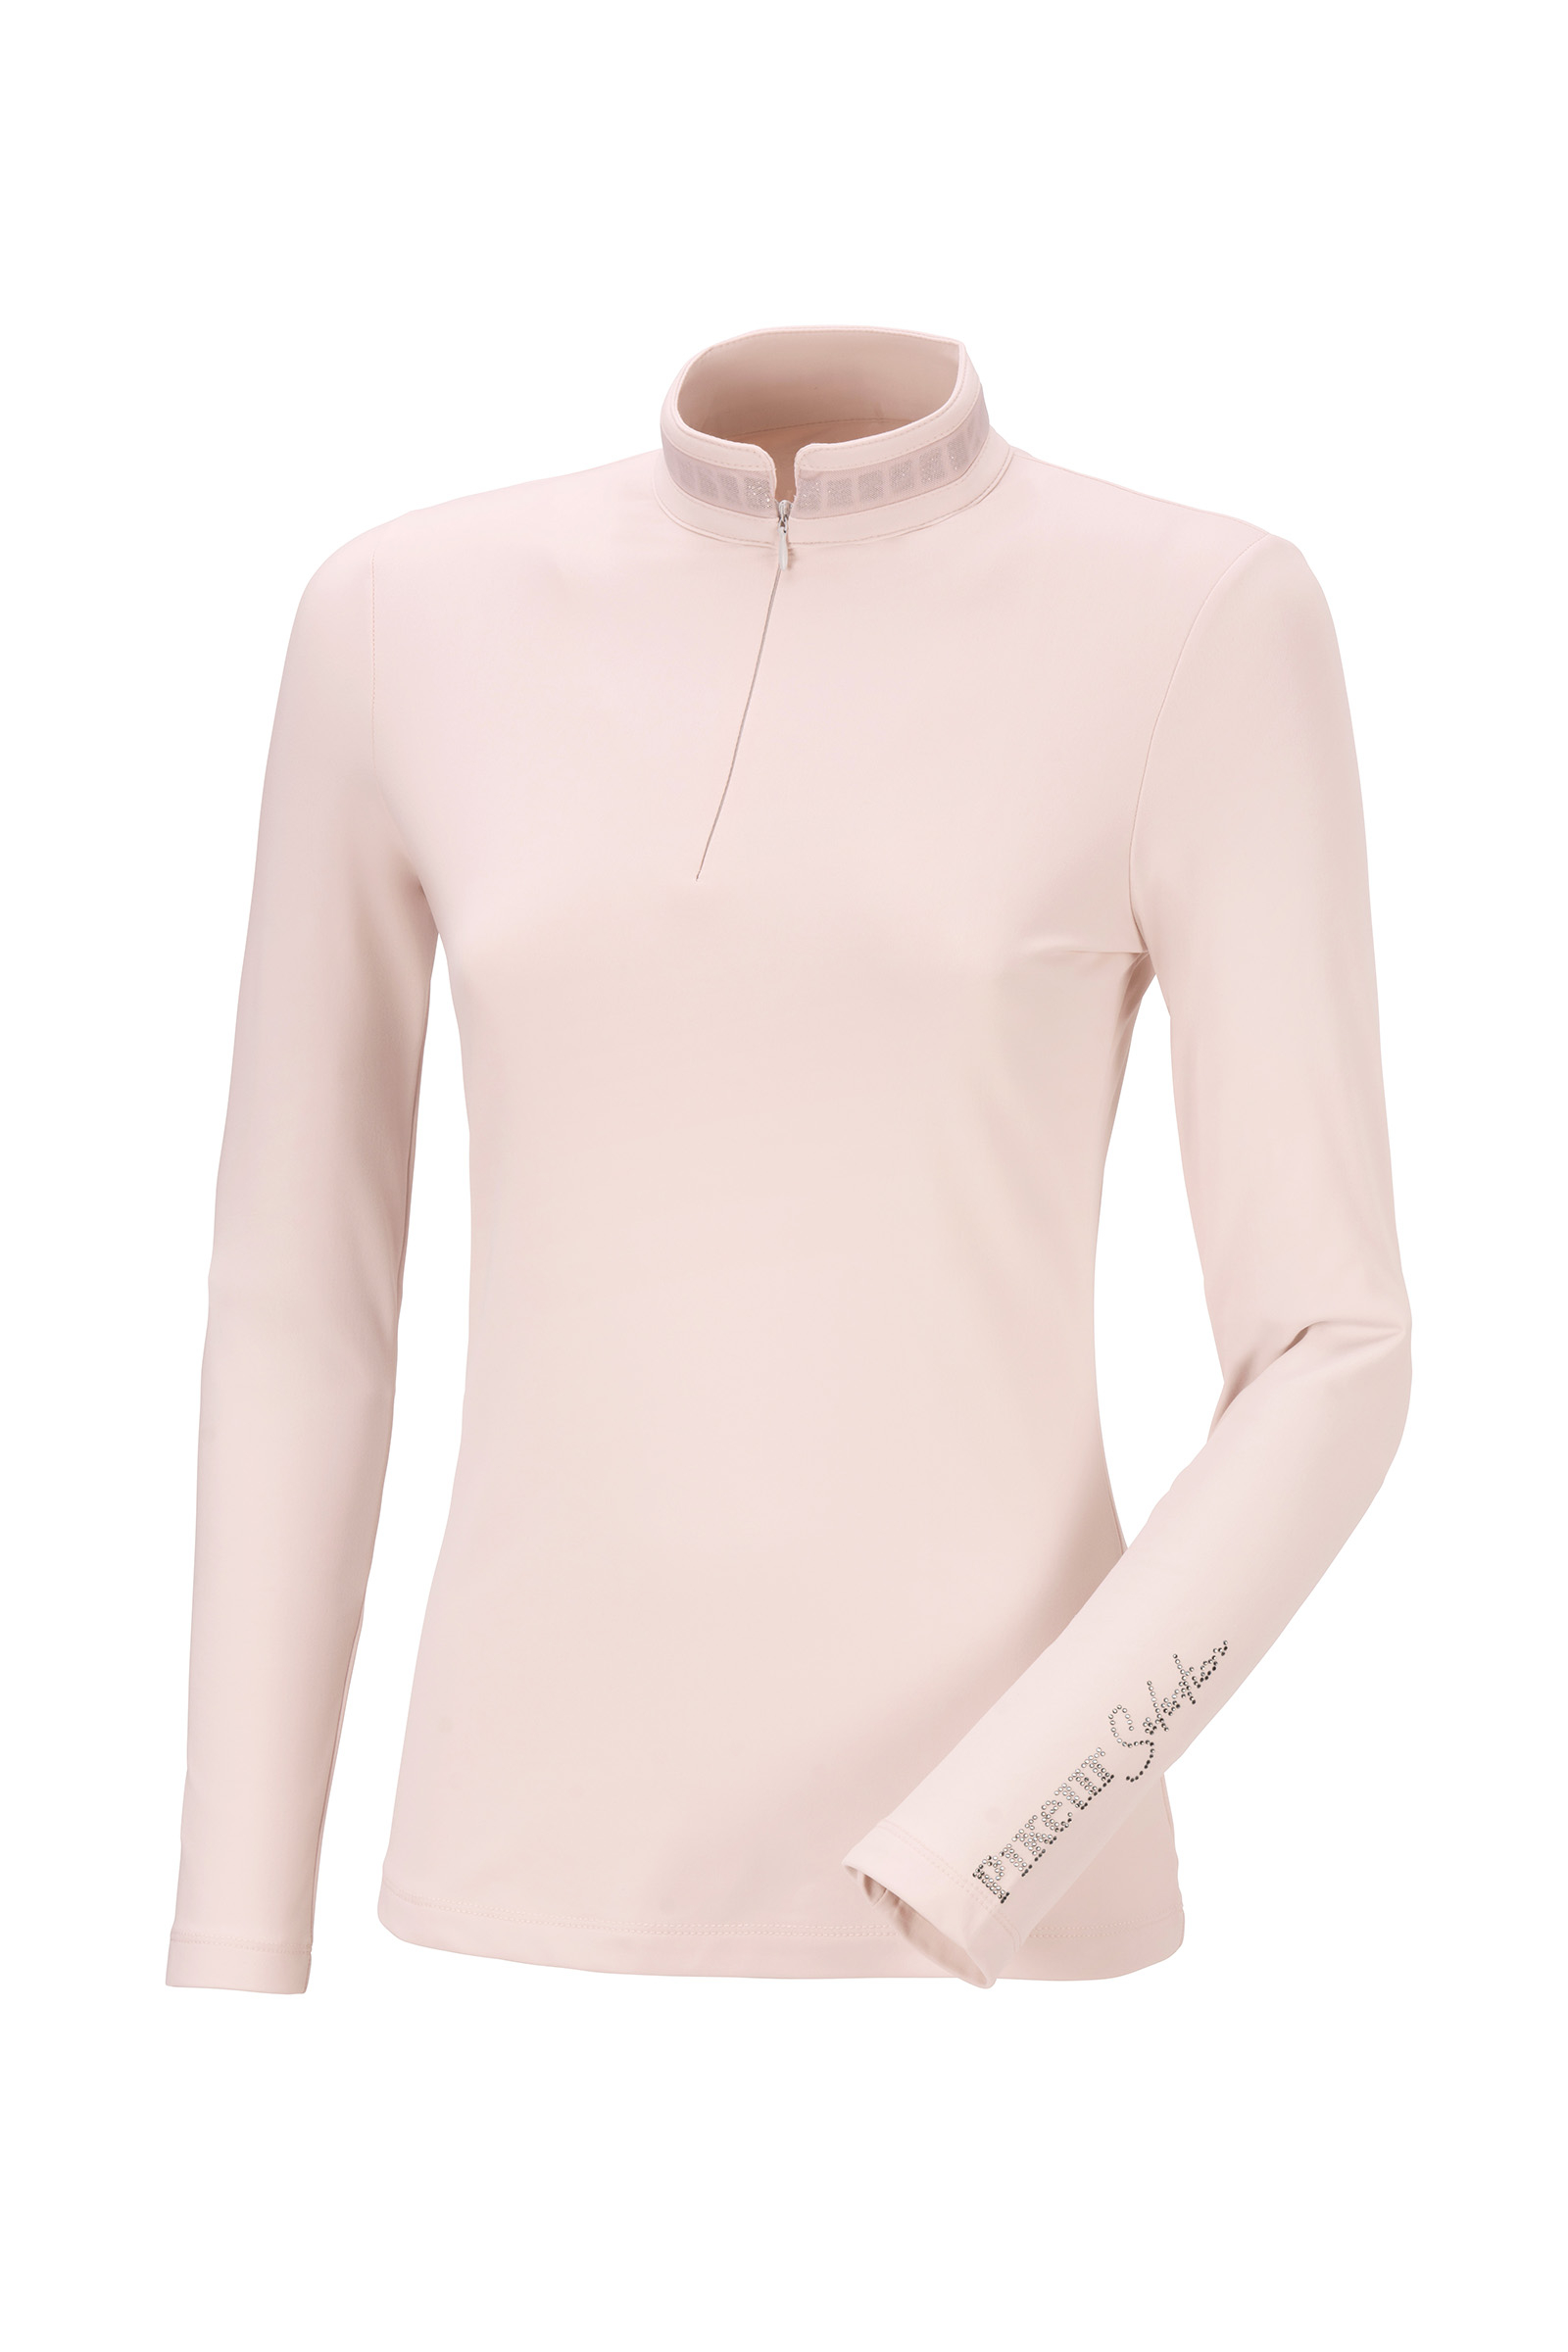 Winter Tech-Shirt NOREA, Damen, Selection 21, grey violet